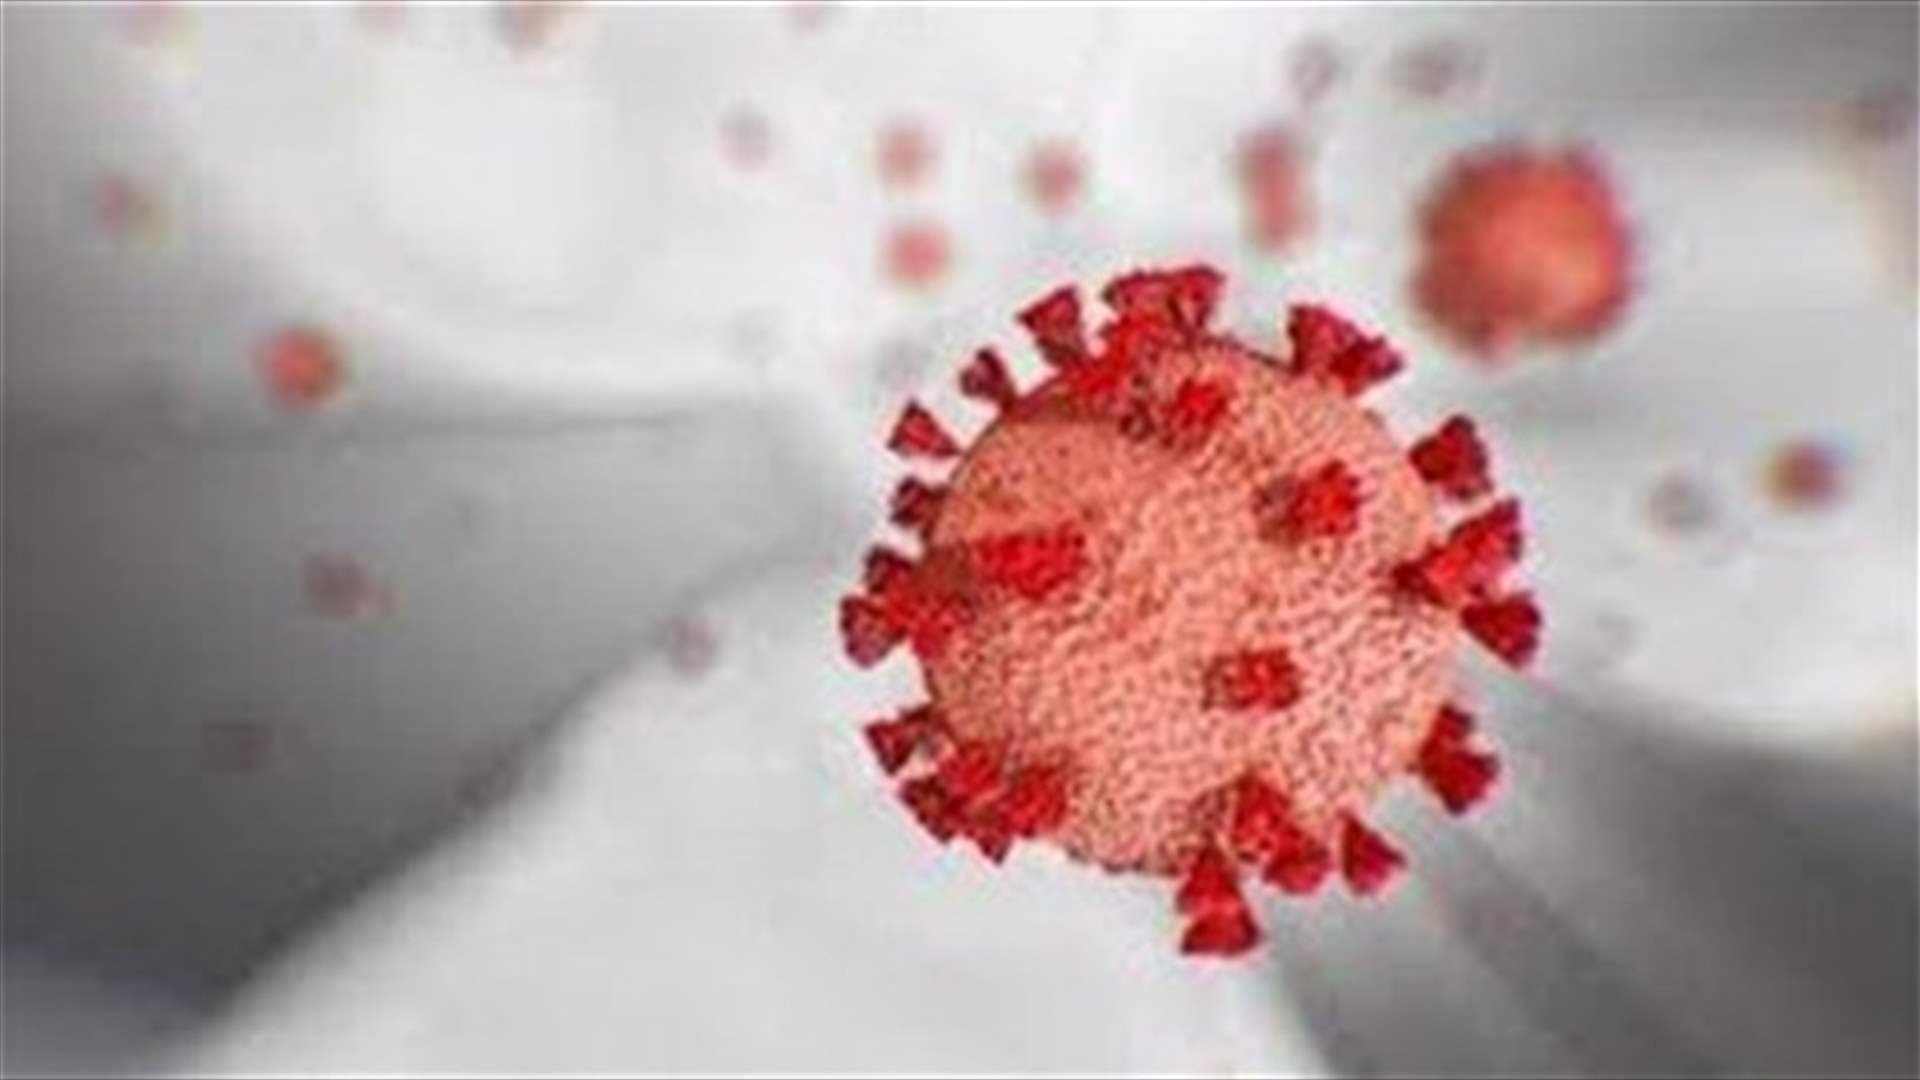 The daily report on coronavirus in Lebanon